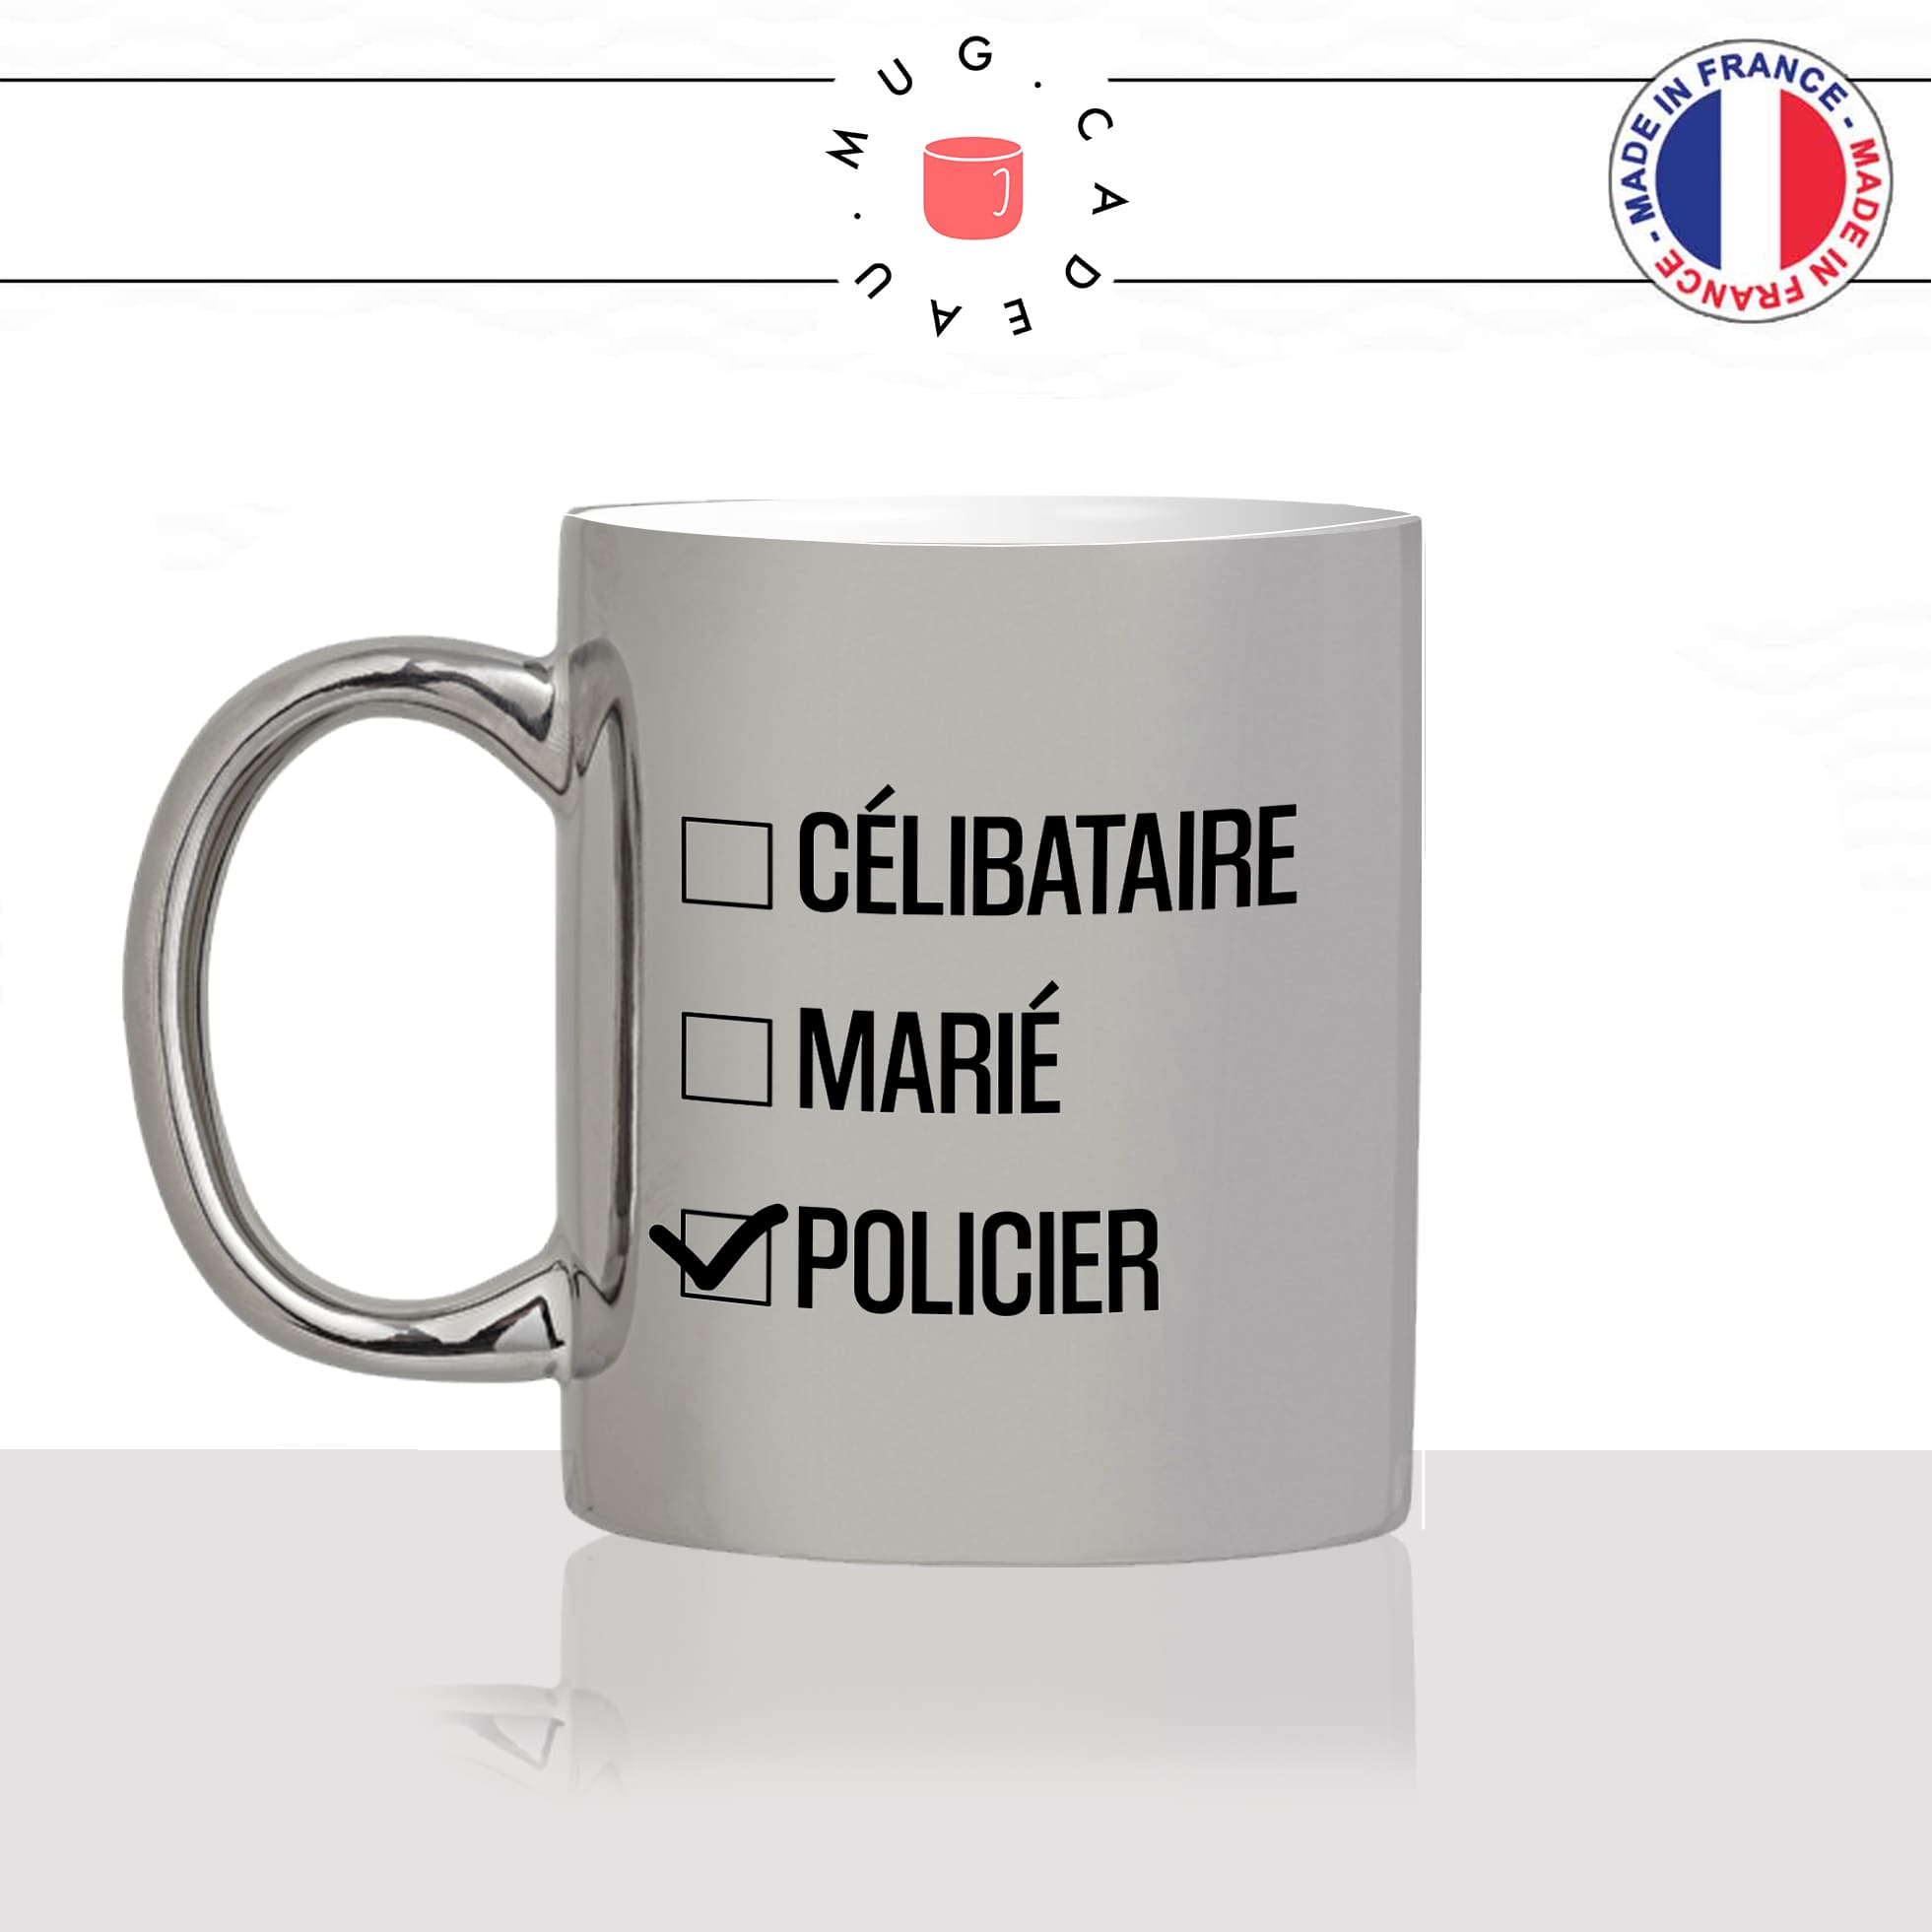 mug-tasse-argenté-silver-celibataire-marié-policier-fonctionnaire-de-police-travail-métier-fun-cool-café-thé-idée-cadeau-original